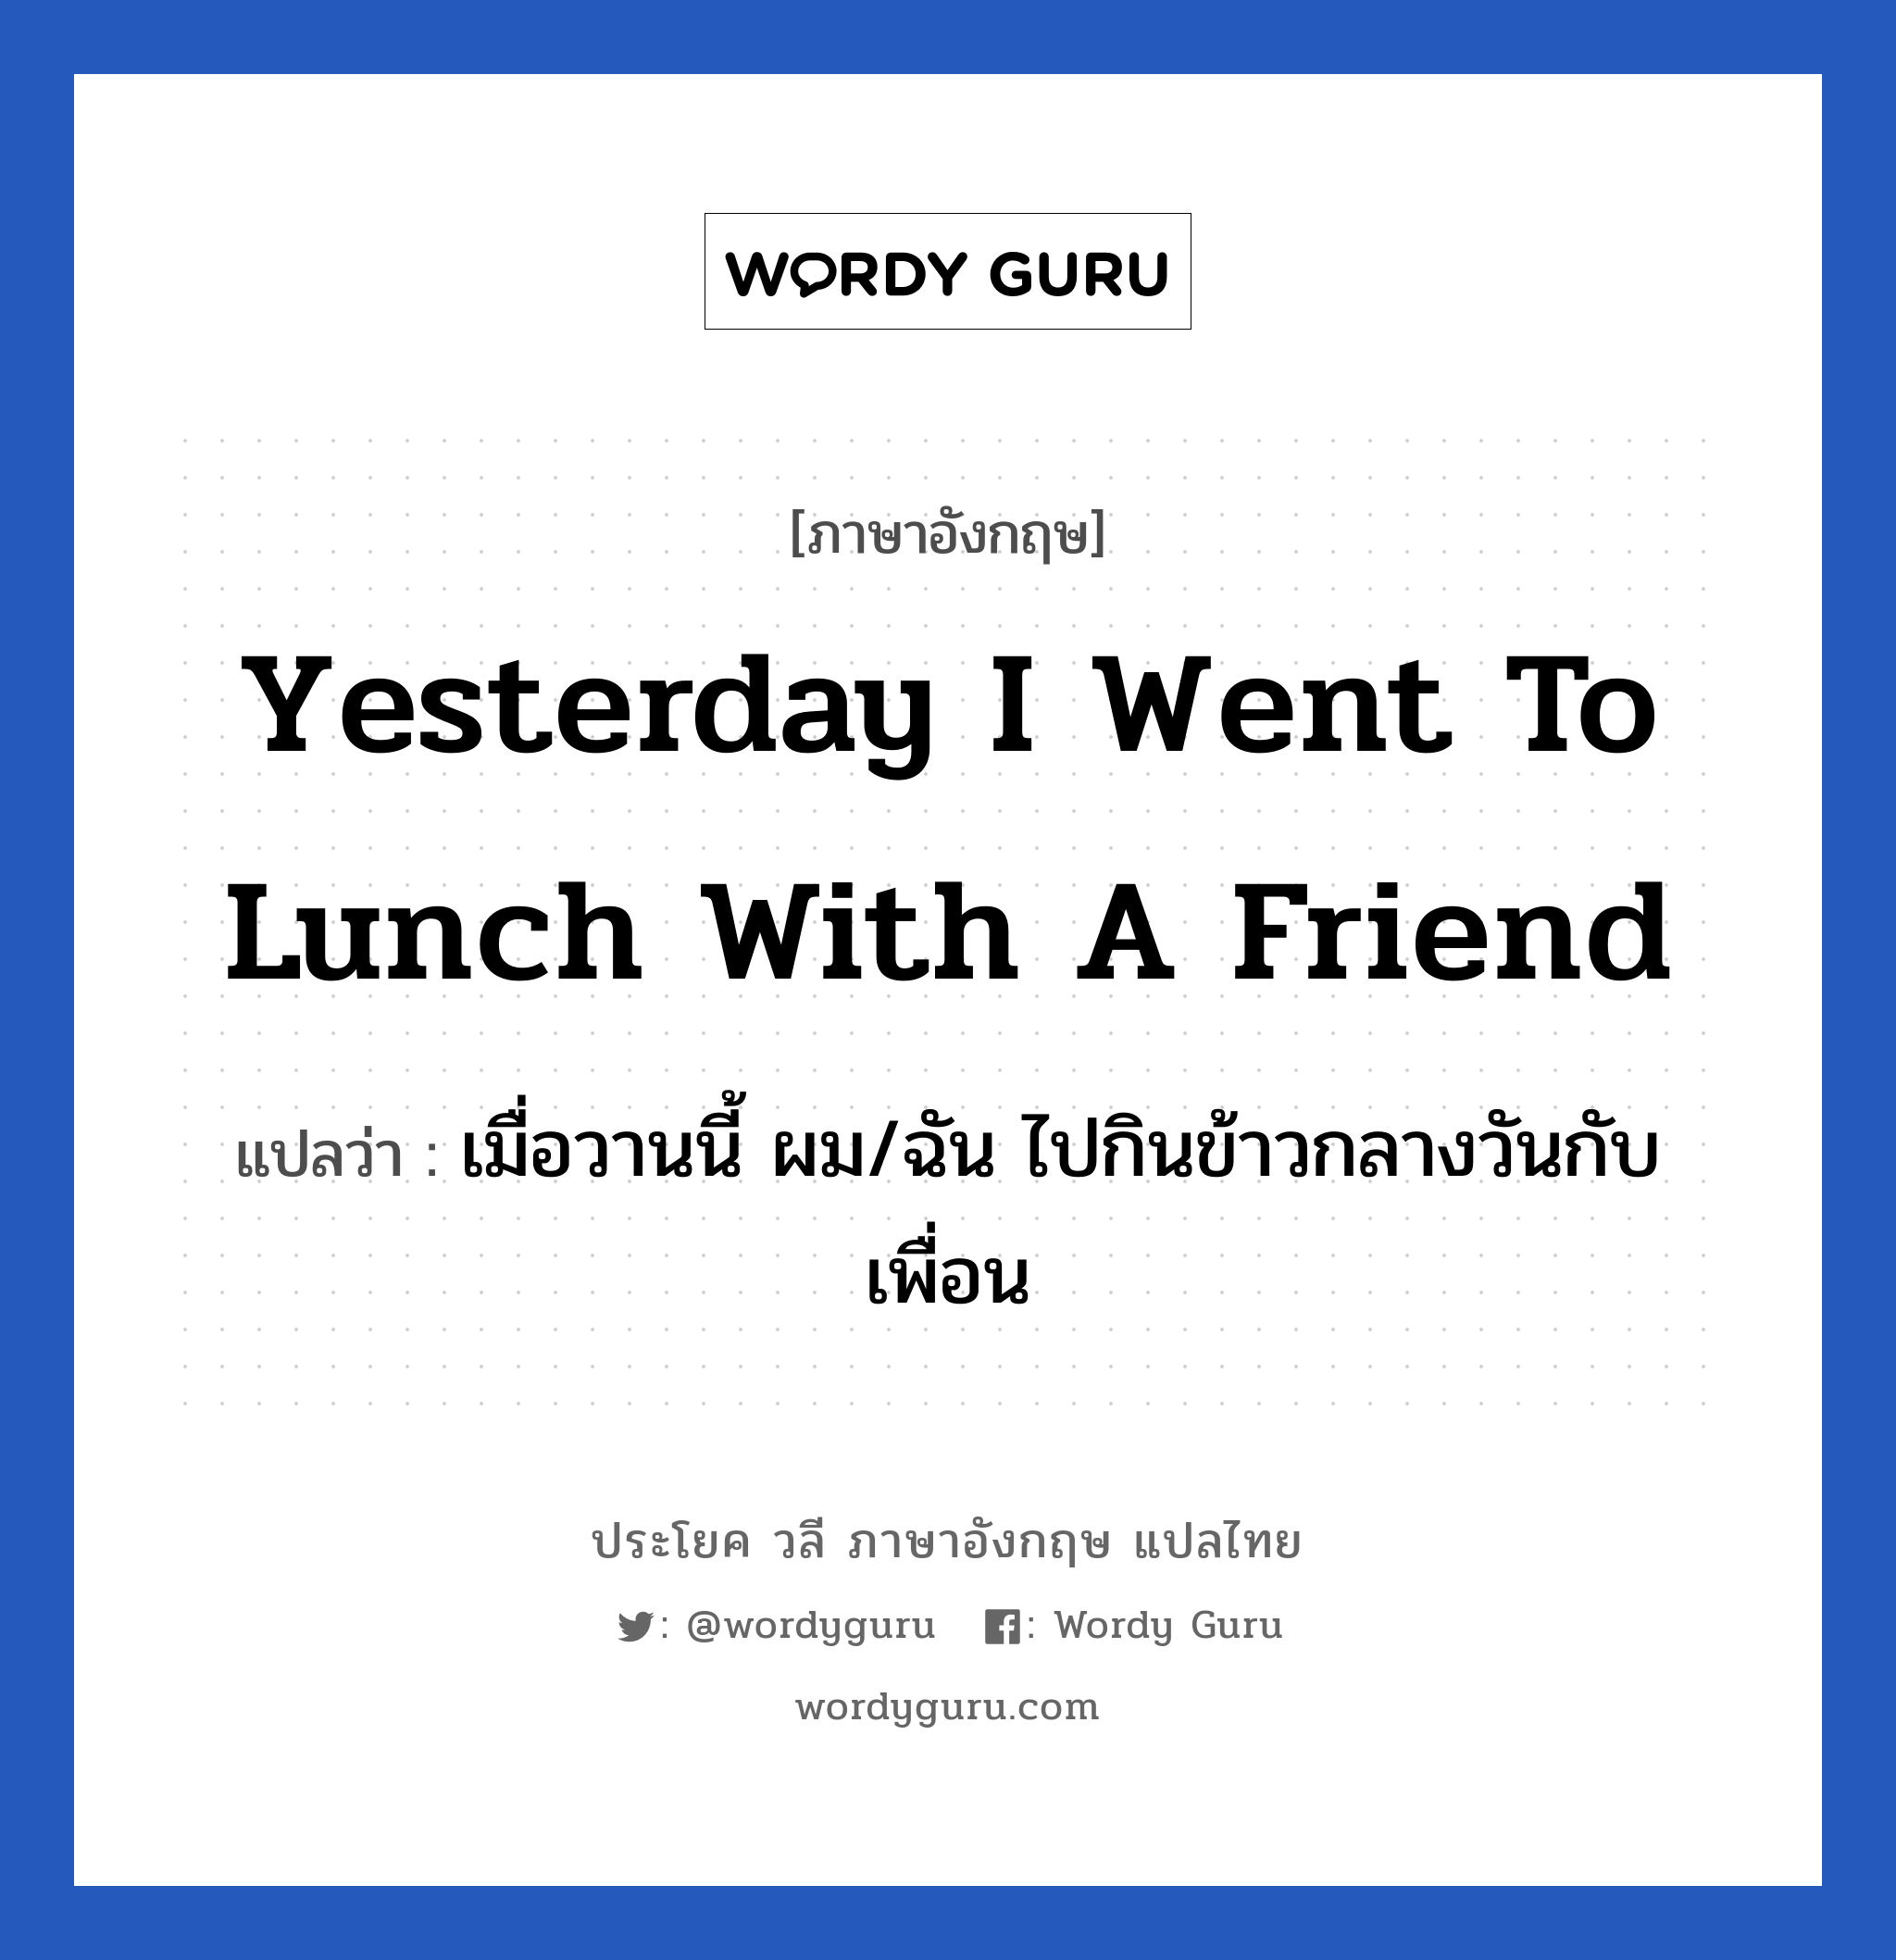 เมื่อวานนี้ ผม/ฉัน ไปกินข้าวกลางวันกับเพื่อน ภาษาอังกฤษ?, วลีภาษาอังกฤษ เมื่อวานนี้ ผม/ฉัน ไปกินข้าวกลางวันกับเพื่อน แปลว่า Yesterday I went to lunch with a friend